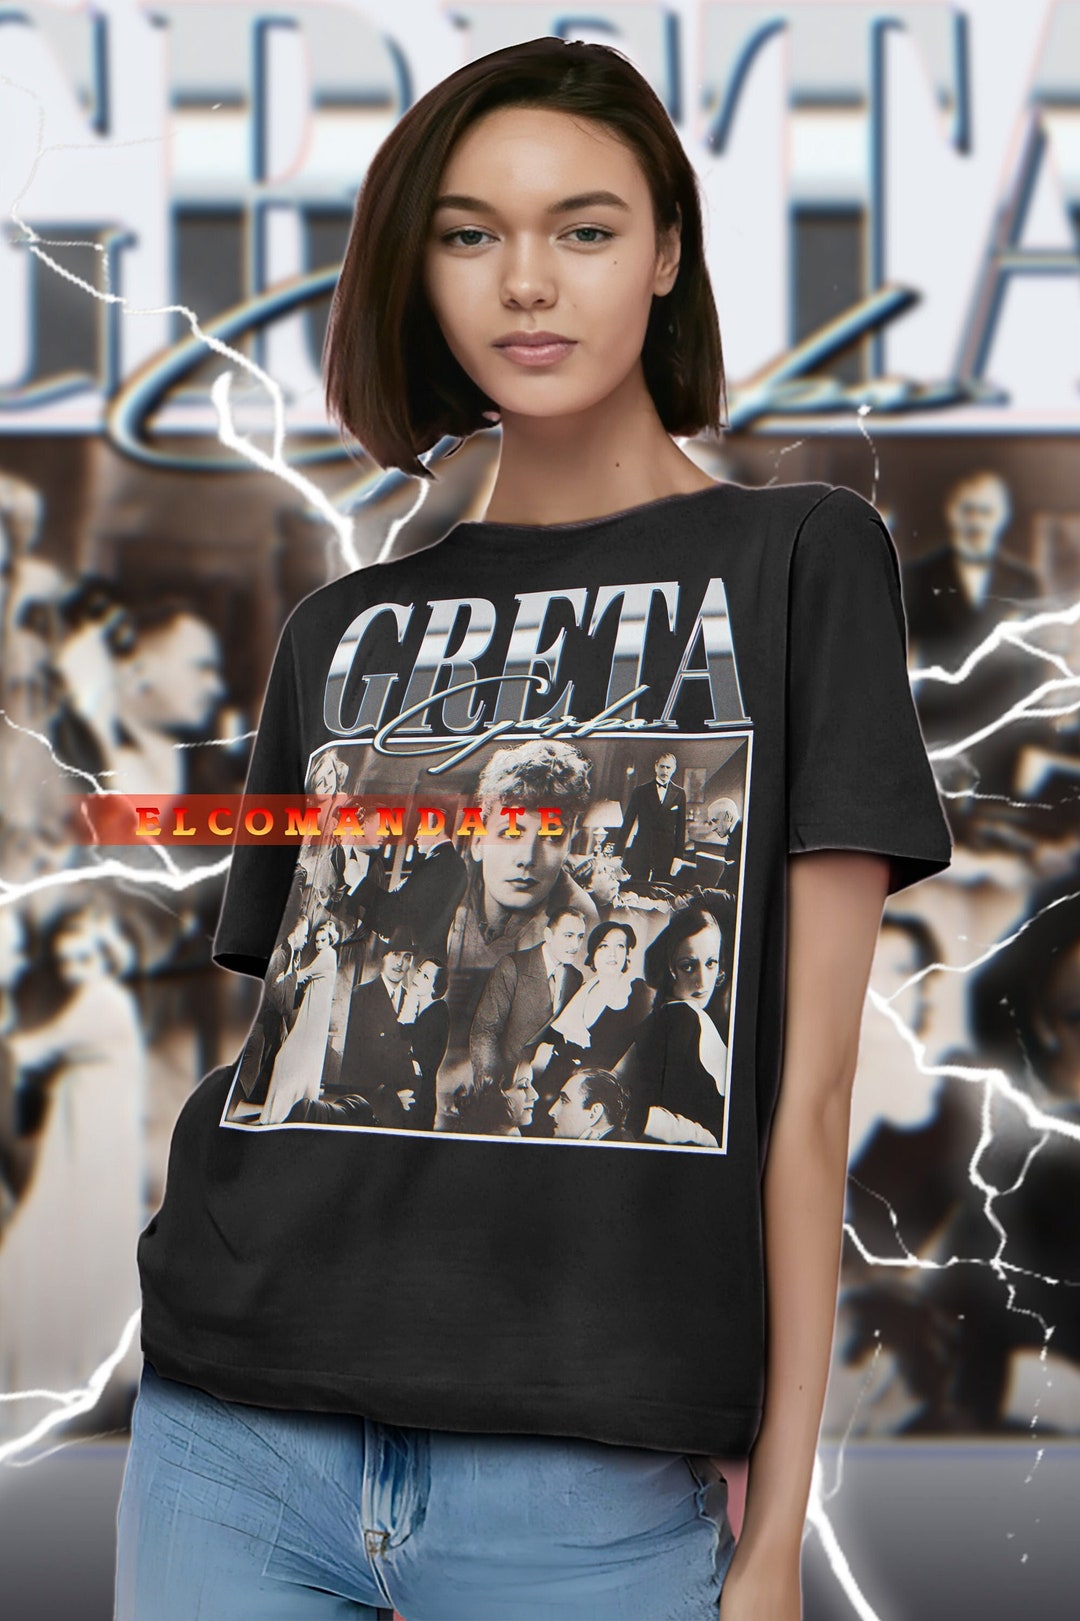 Actress GRETA GARBO Vintage Shirt Greta Garbo Homage Tshirt - Etsy